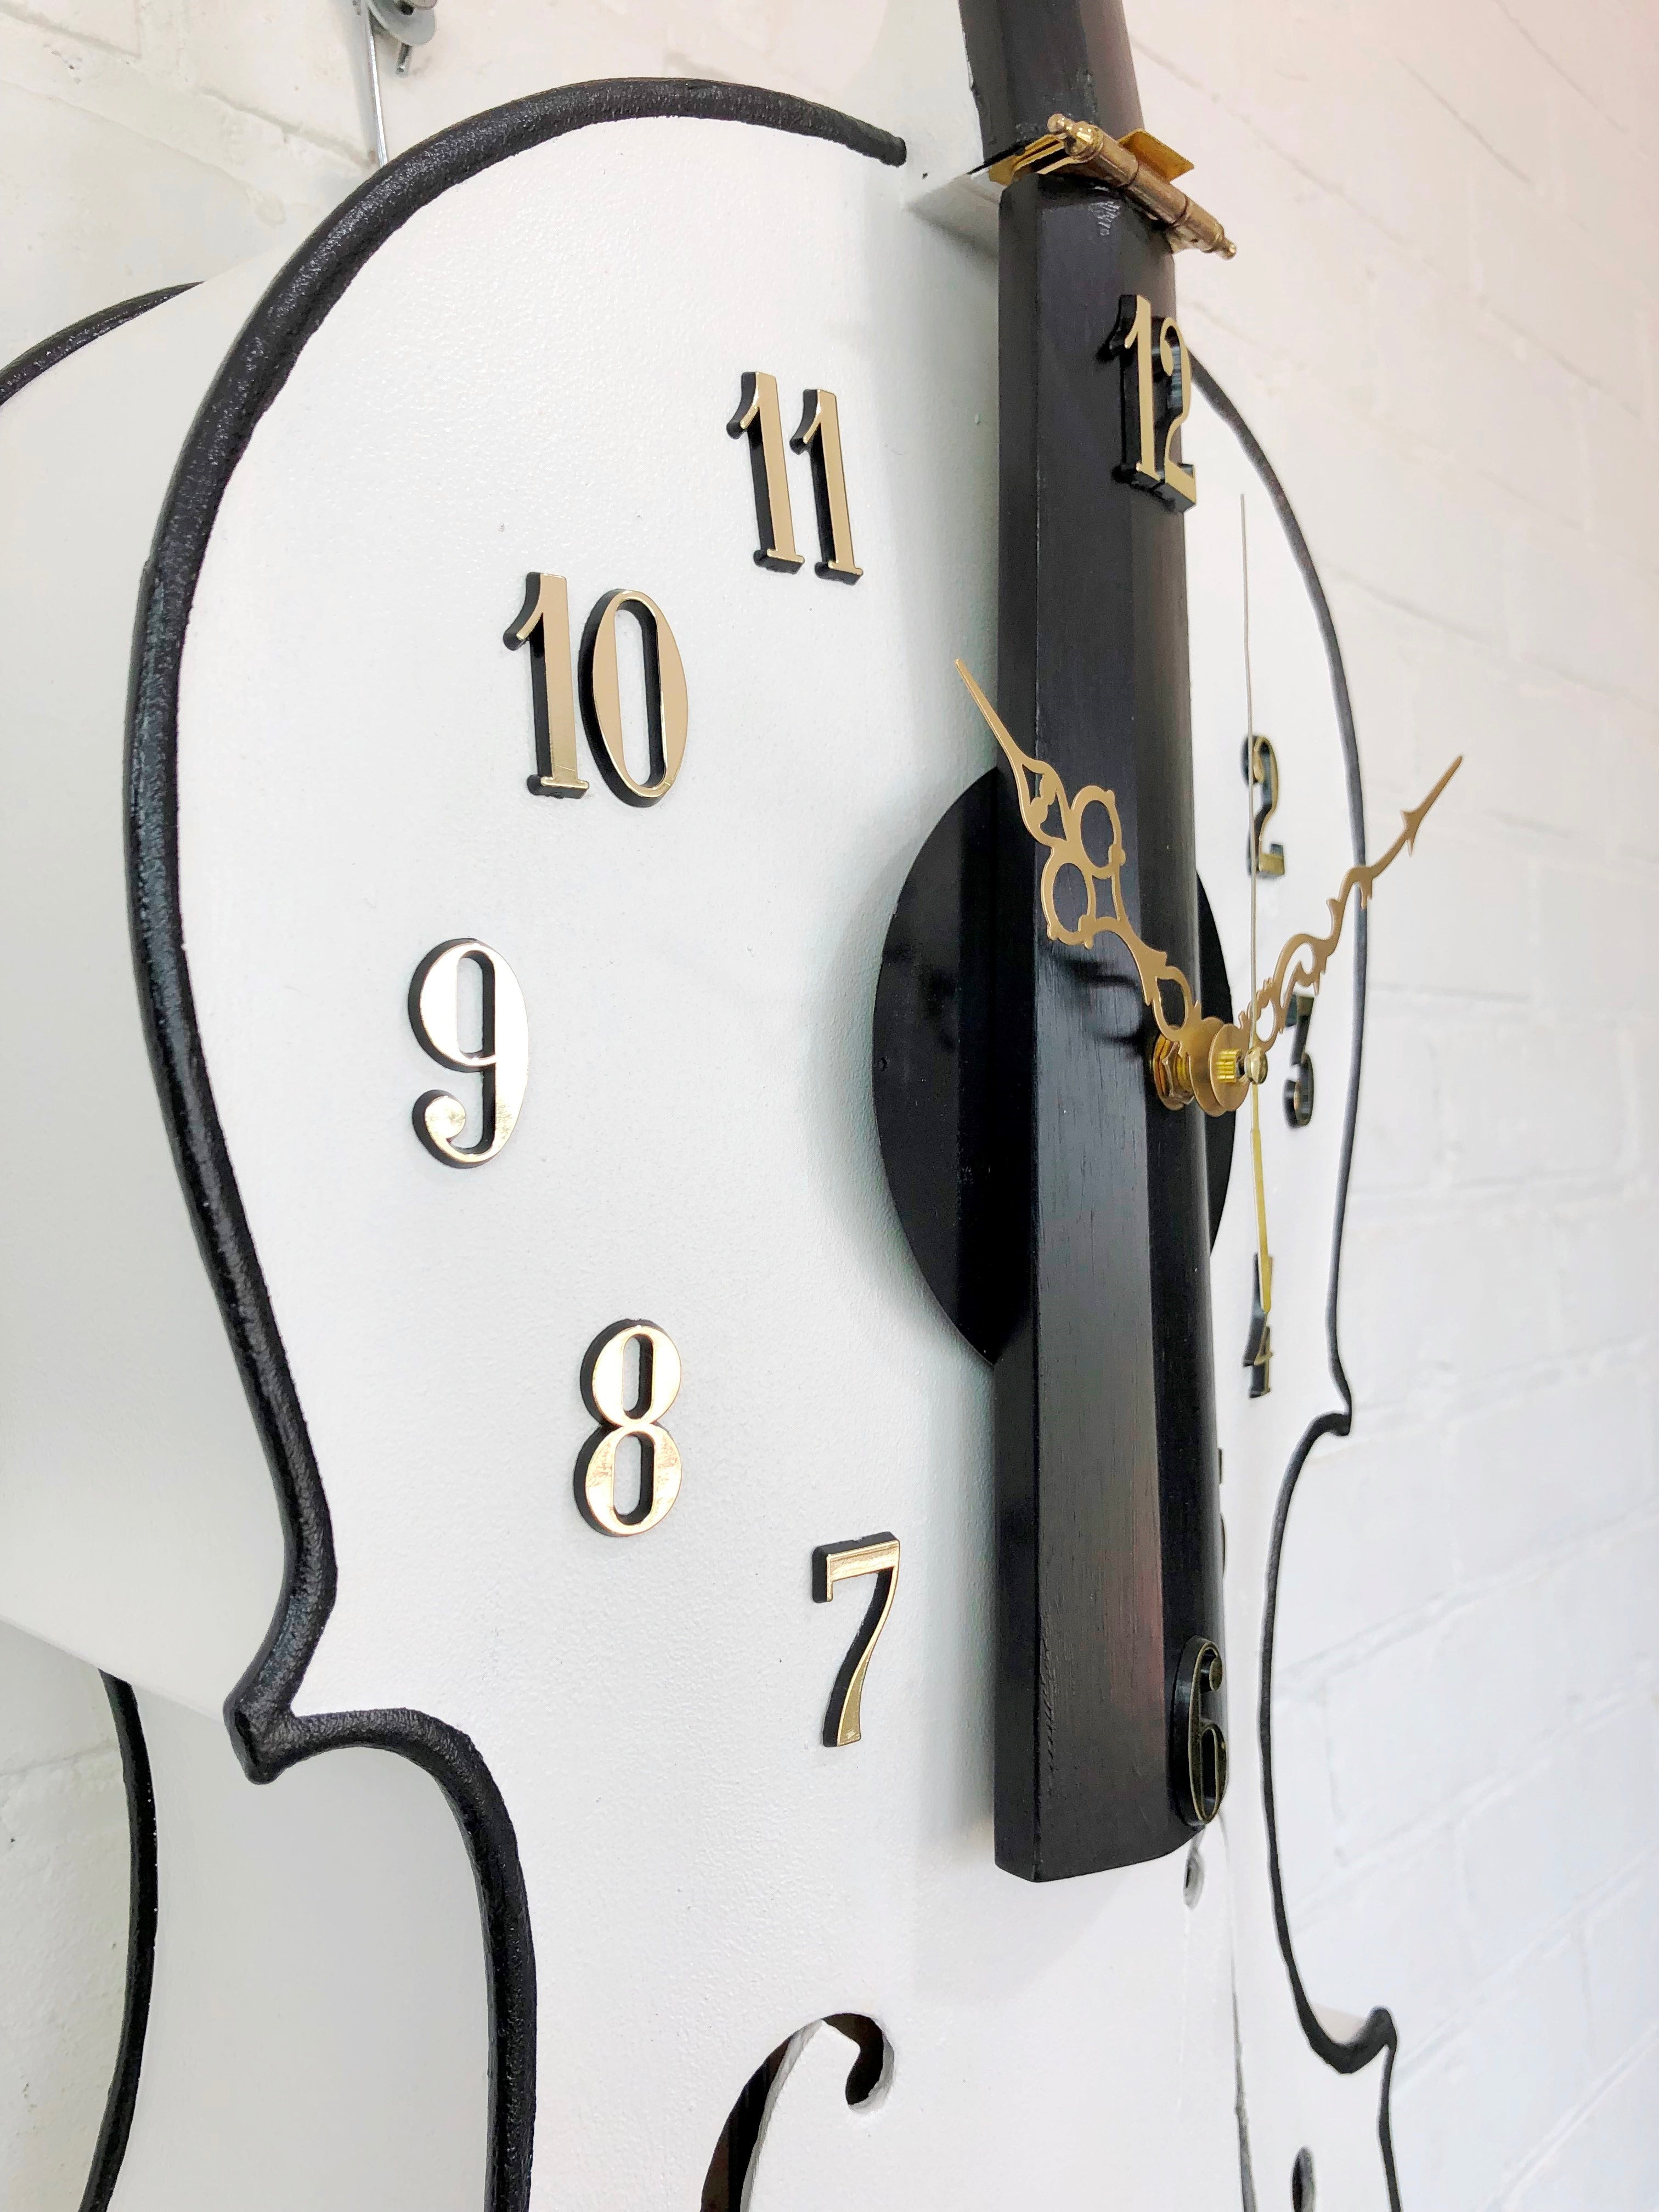 Original 4x String Wooden CELLO Wall Clock | eXibit collection